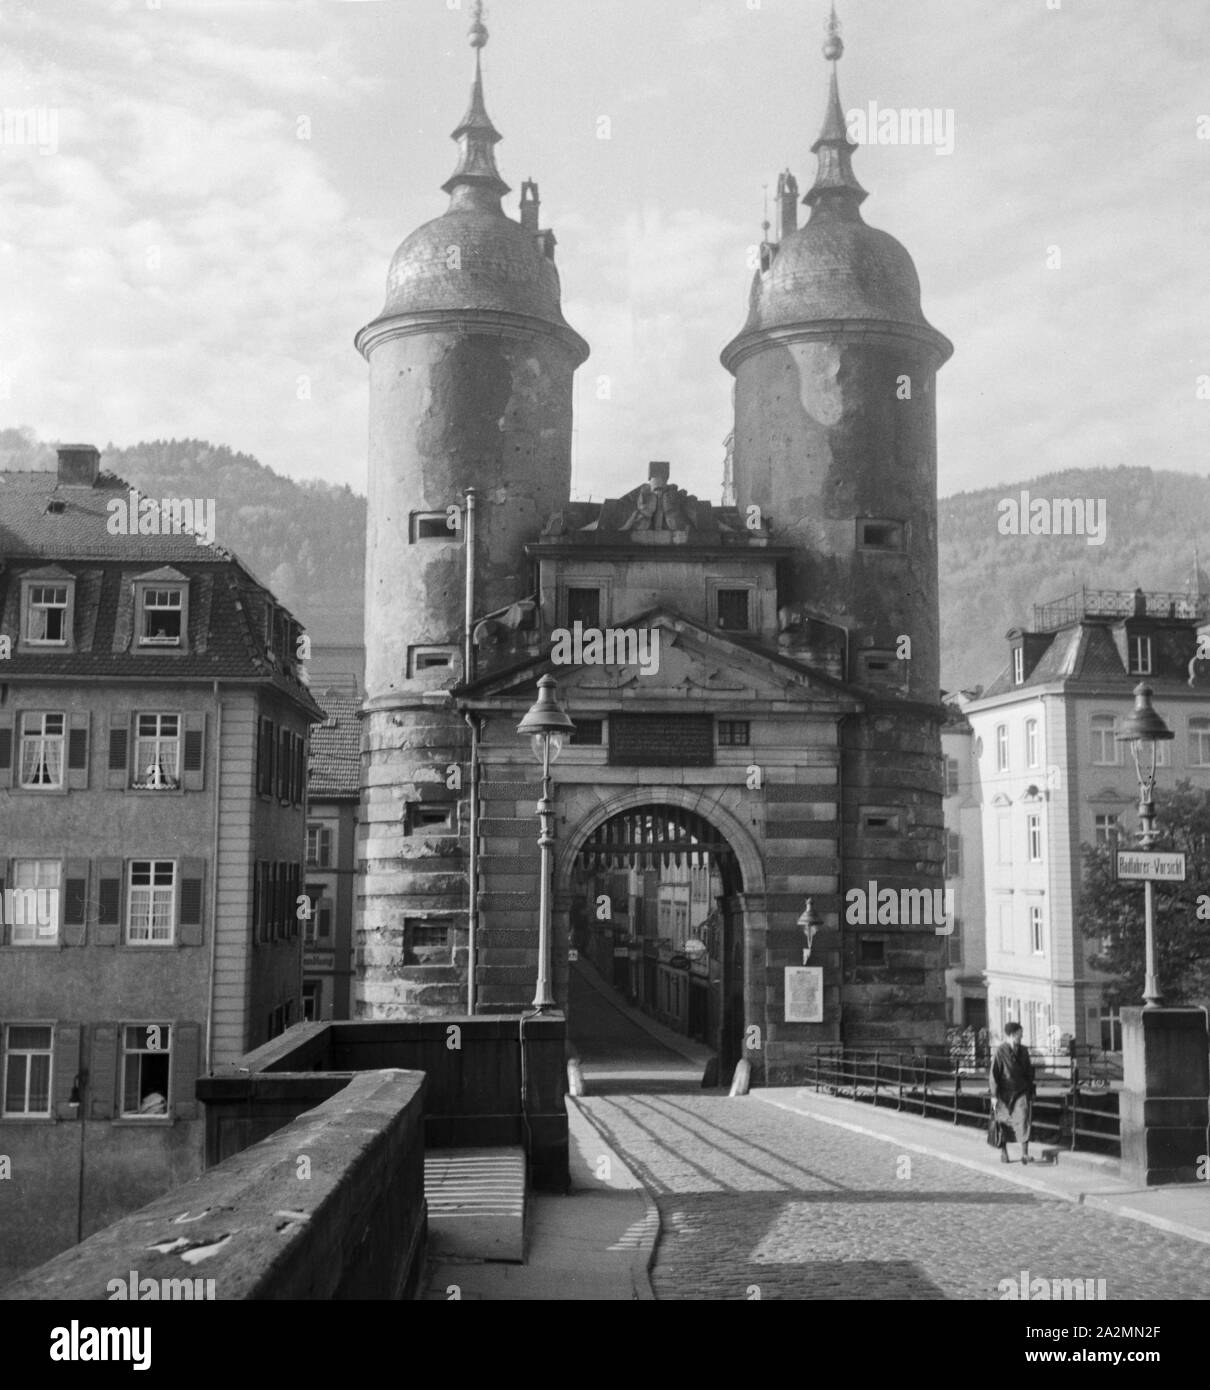 Das Brückentor an der Alten Brücke über den Neckar a Heidelberg, Deutschland 1930er Jahre. Gate Brueckentor presso il vecchio ponte sul fiume Neckar a Heidelberg, Germania 1930s. Foto Stock